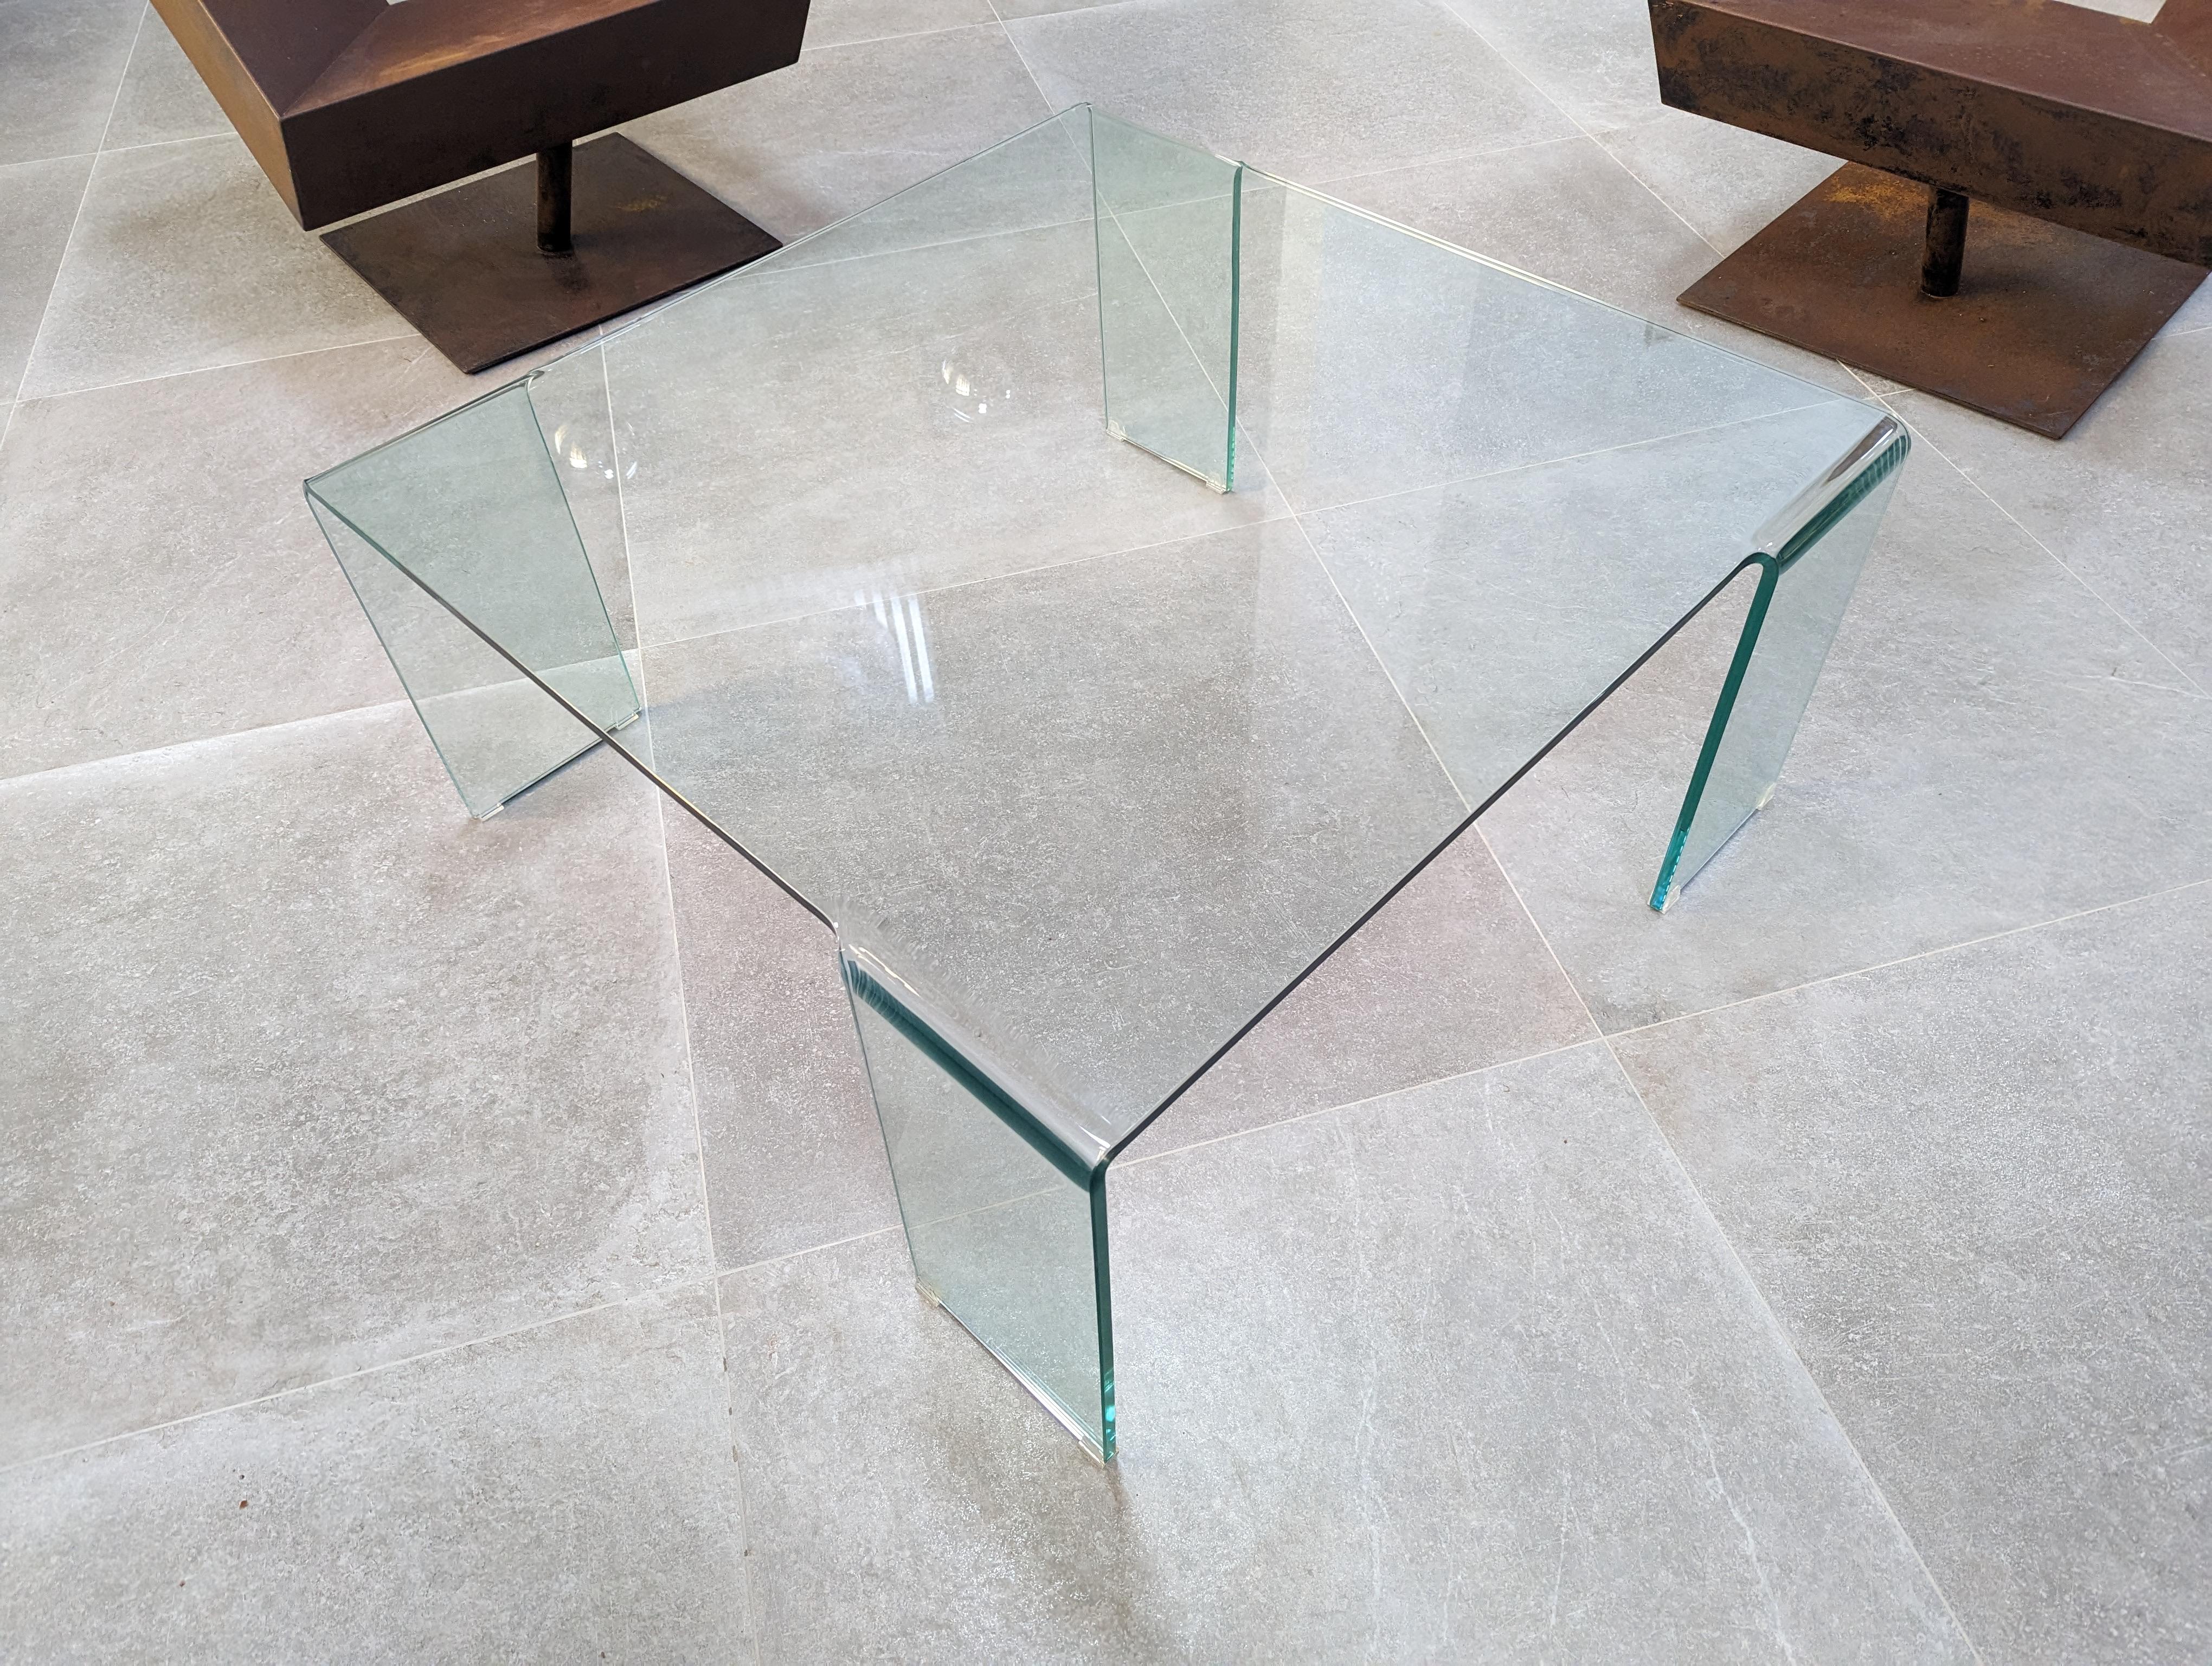 Table élégante en verre bombé reprenant le célèbre design de la table Neutra créée par Rodolfo Dordoni pour FIAM. Une table intemporelle qui s'adapte à tous les styles et à toutes les pièces, offrant espace et lumière visuelle à l'ensemble de